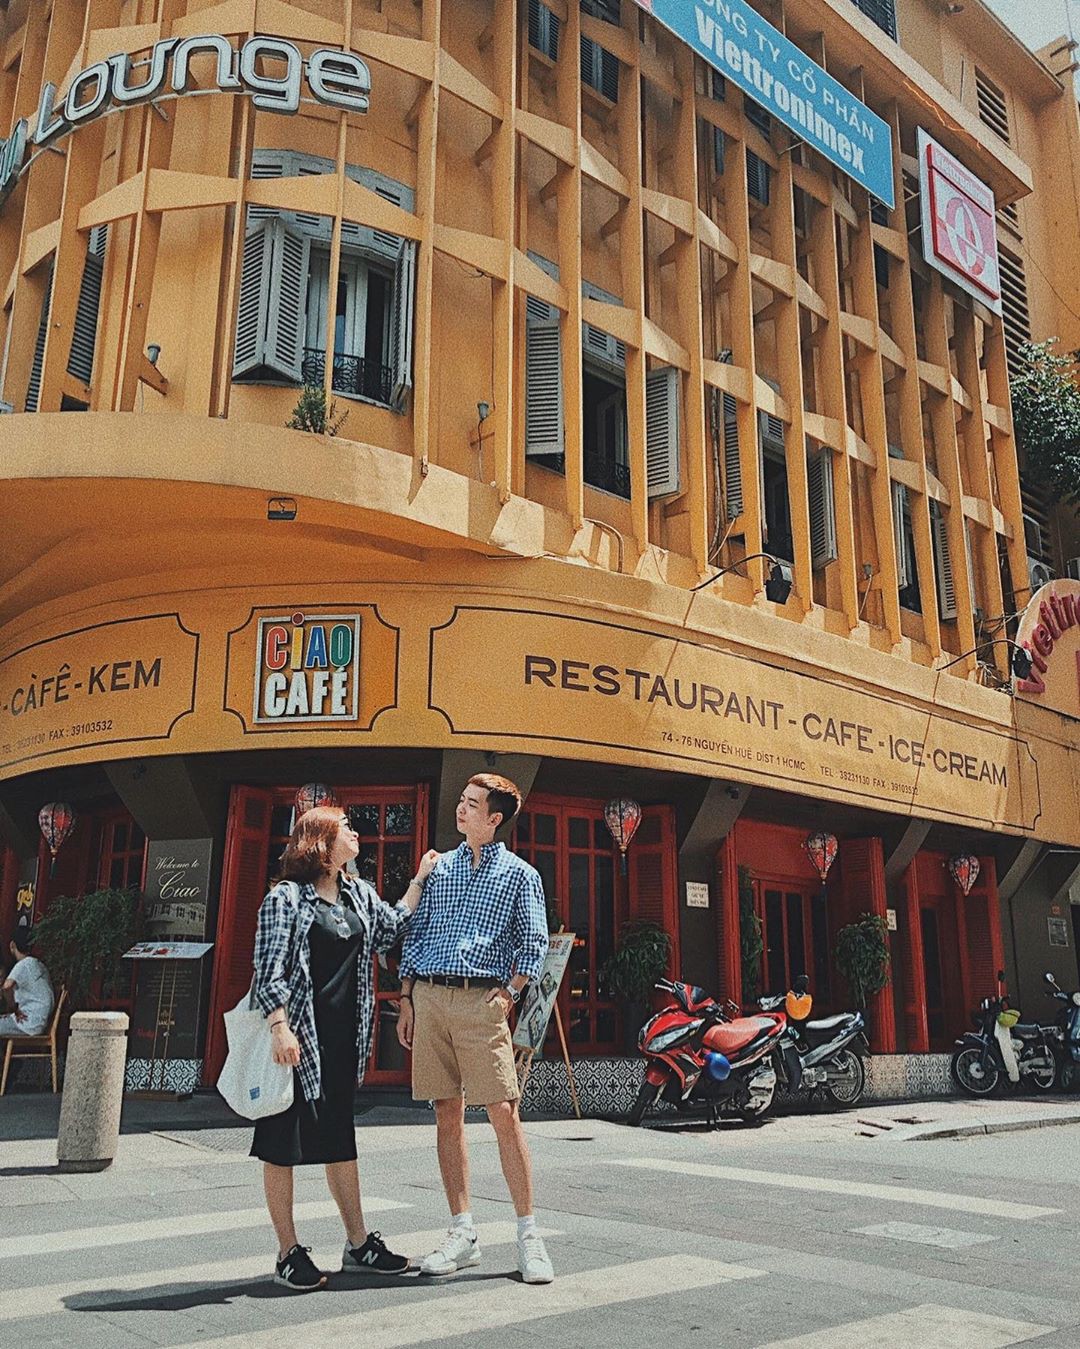 Sài Gòn với những điểm check-in độc đáo là nơi lý tưởng để bạn tạo ra những bức ảnh đầy sáng tạo và ấn tượng. Với địa điểm check-in độc đáo như phố đi bộ Nguyễn Huệ hay khu căn hộ Sài Gòn Pearl, bạn sẽ có những bức ảnh đẹp để chia sẻ trên mạng xã hội.